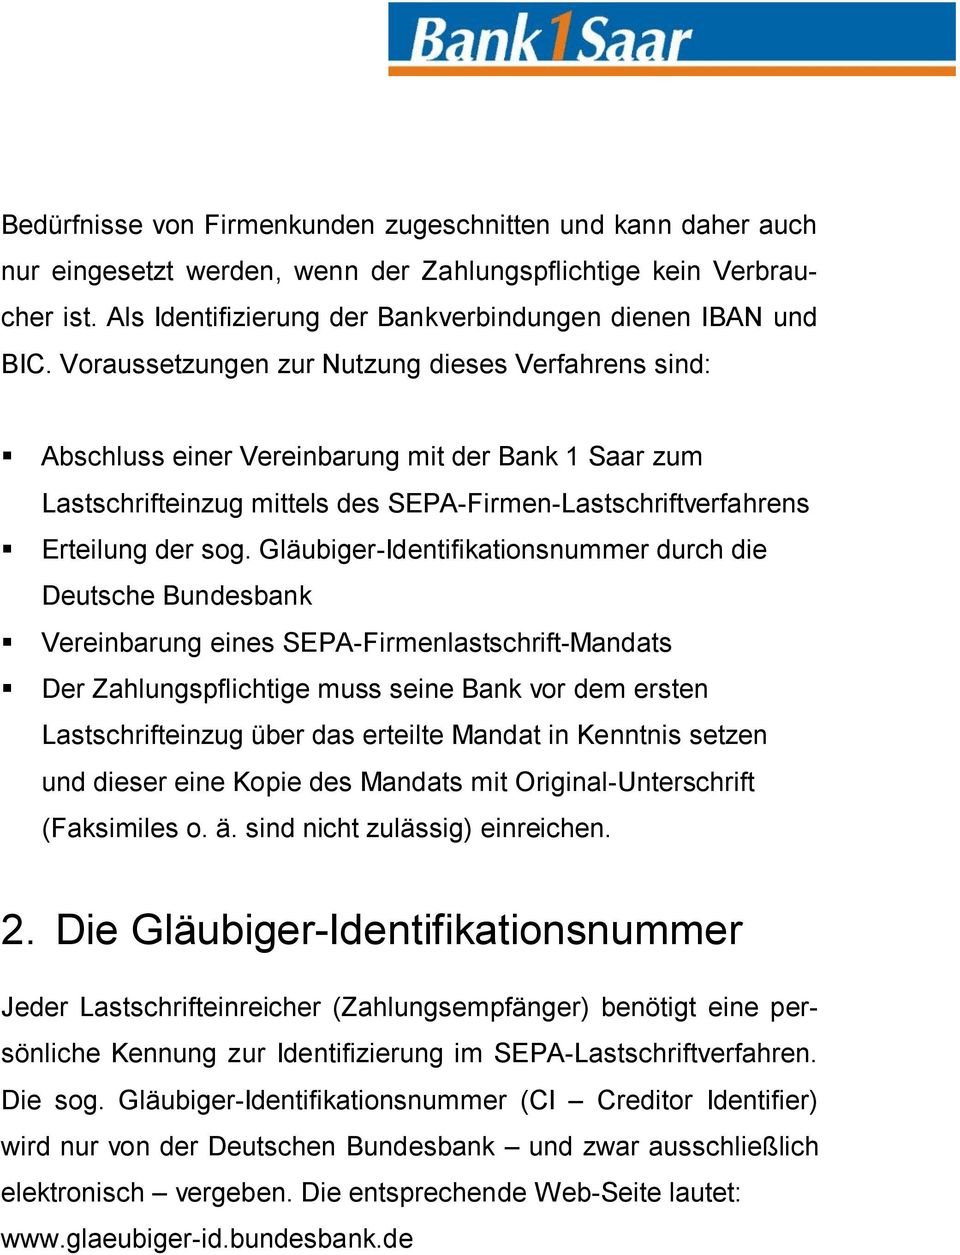 Gläubiger-Identifikationsnummer durch die Deutsche Bundesbank Vereinbarung eines SEPA-Firmenlastschrift-Mandats Der Zahlungspflichtige muss seine Bank vor dem ersten Lastschrifteinzug über das